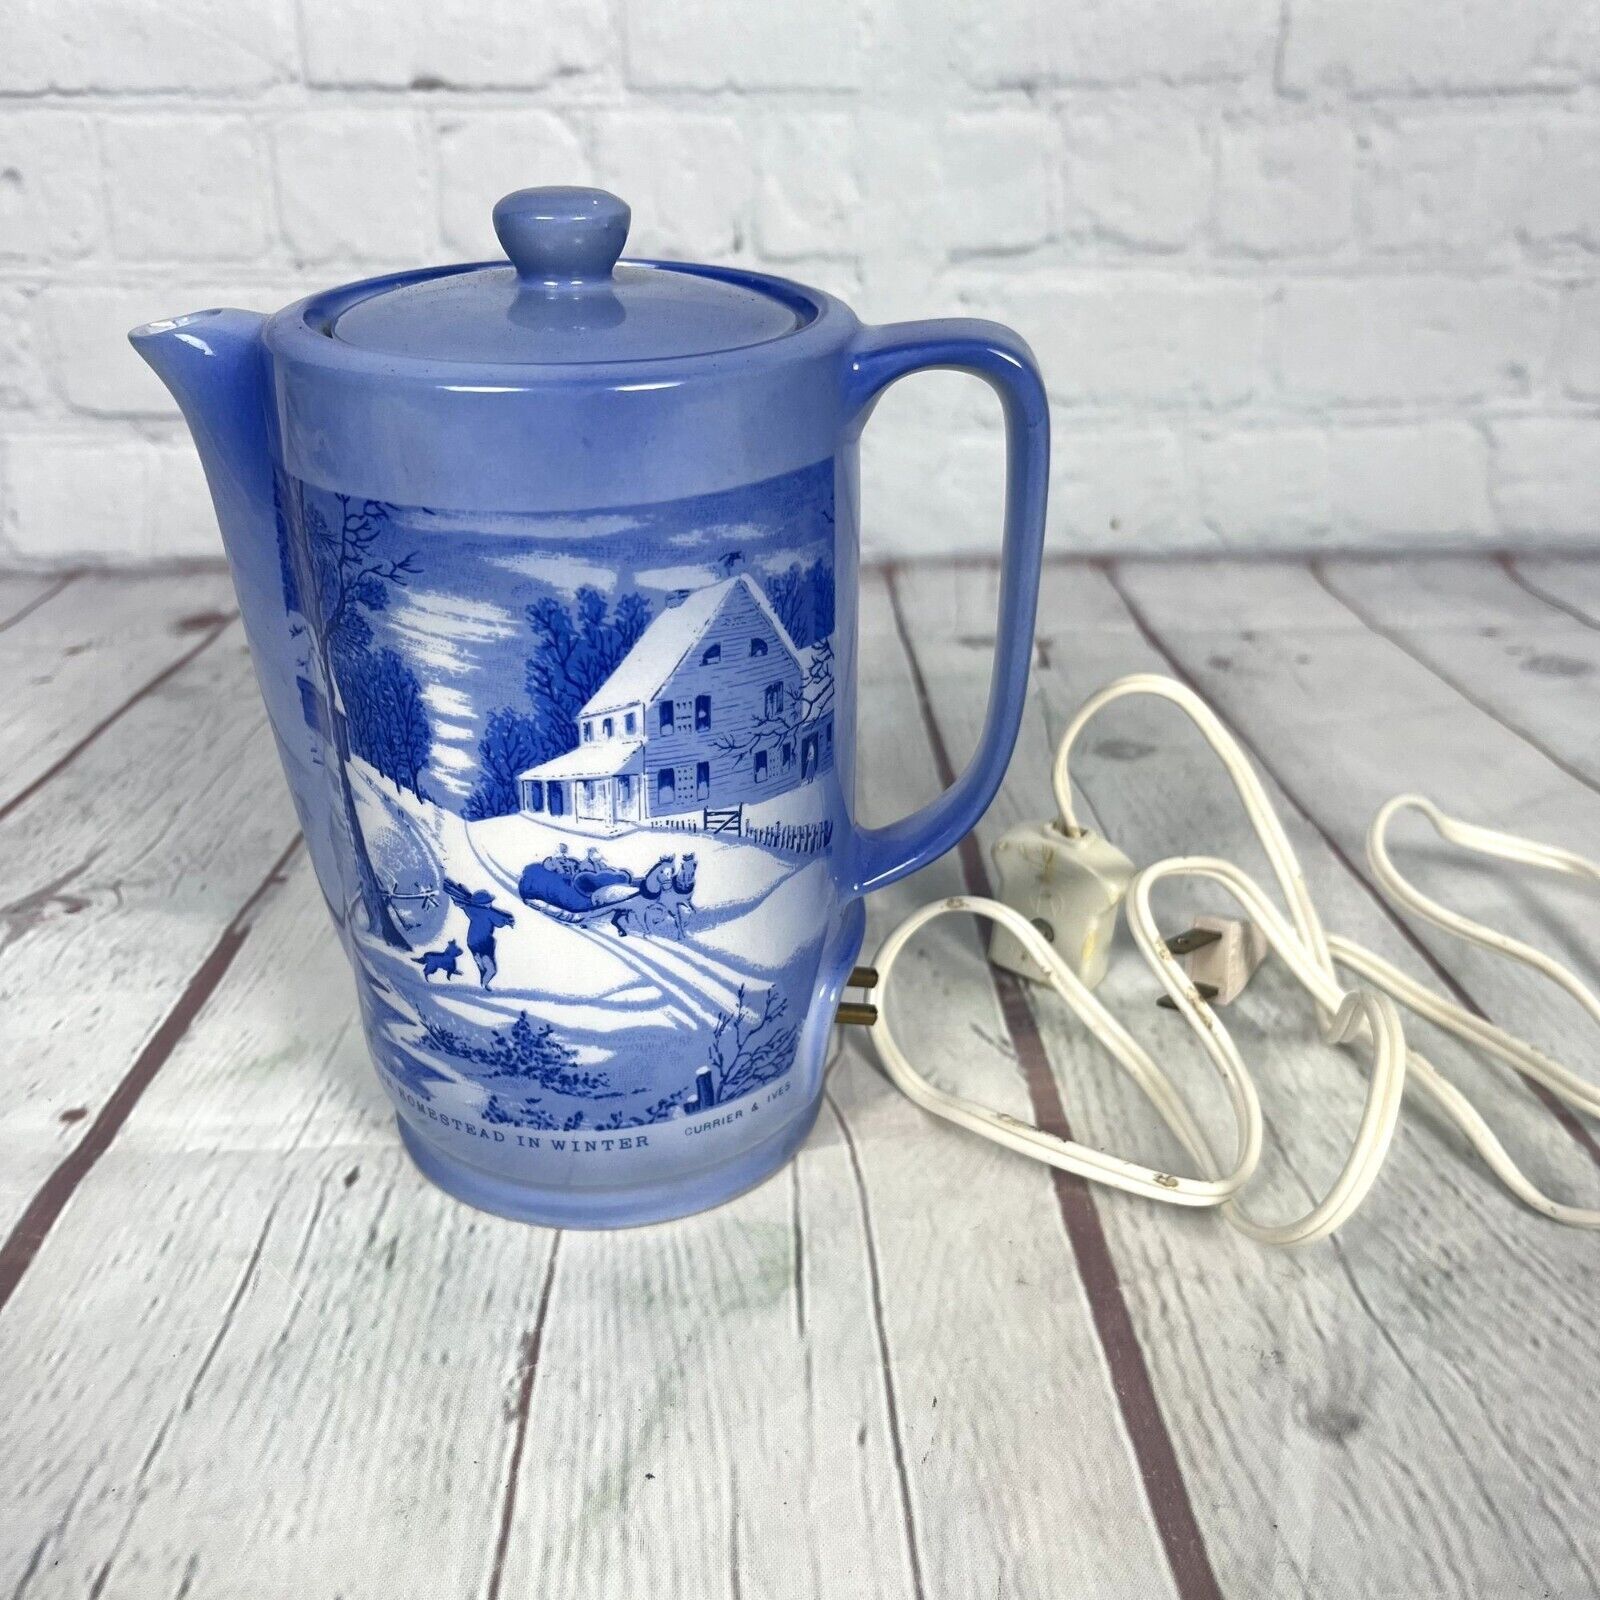 Vintage Currier & Ives Electric Kettle Blue Homestead In Winter Scene Porcelain